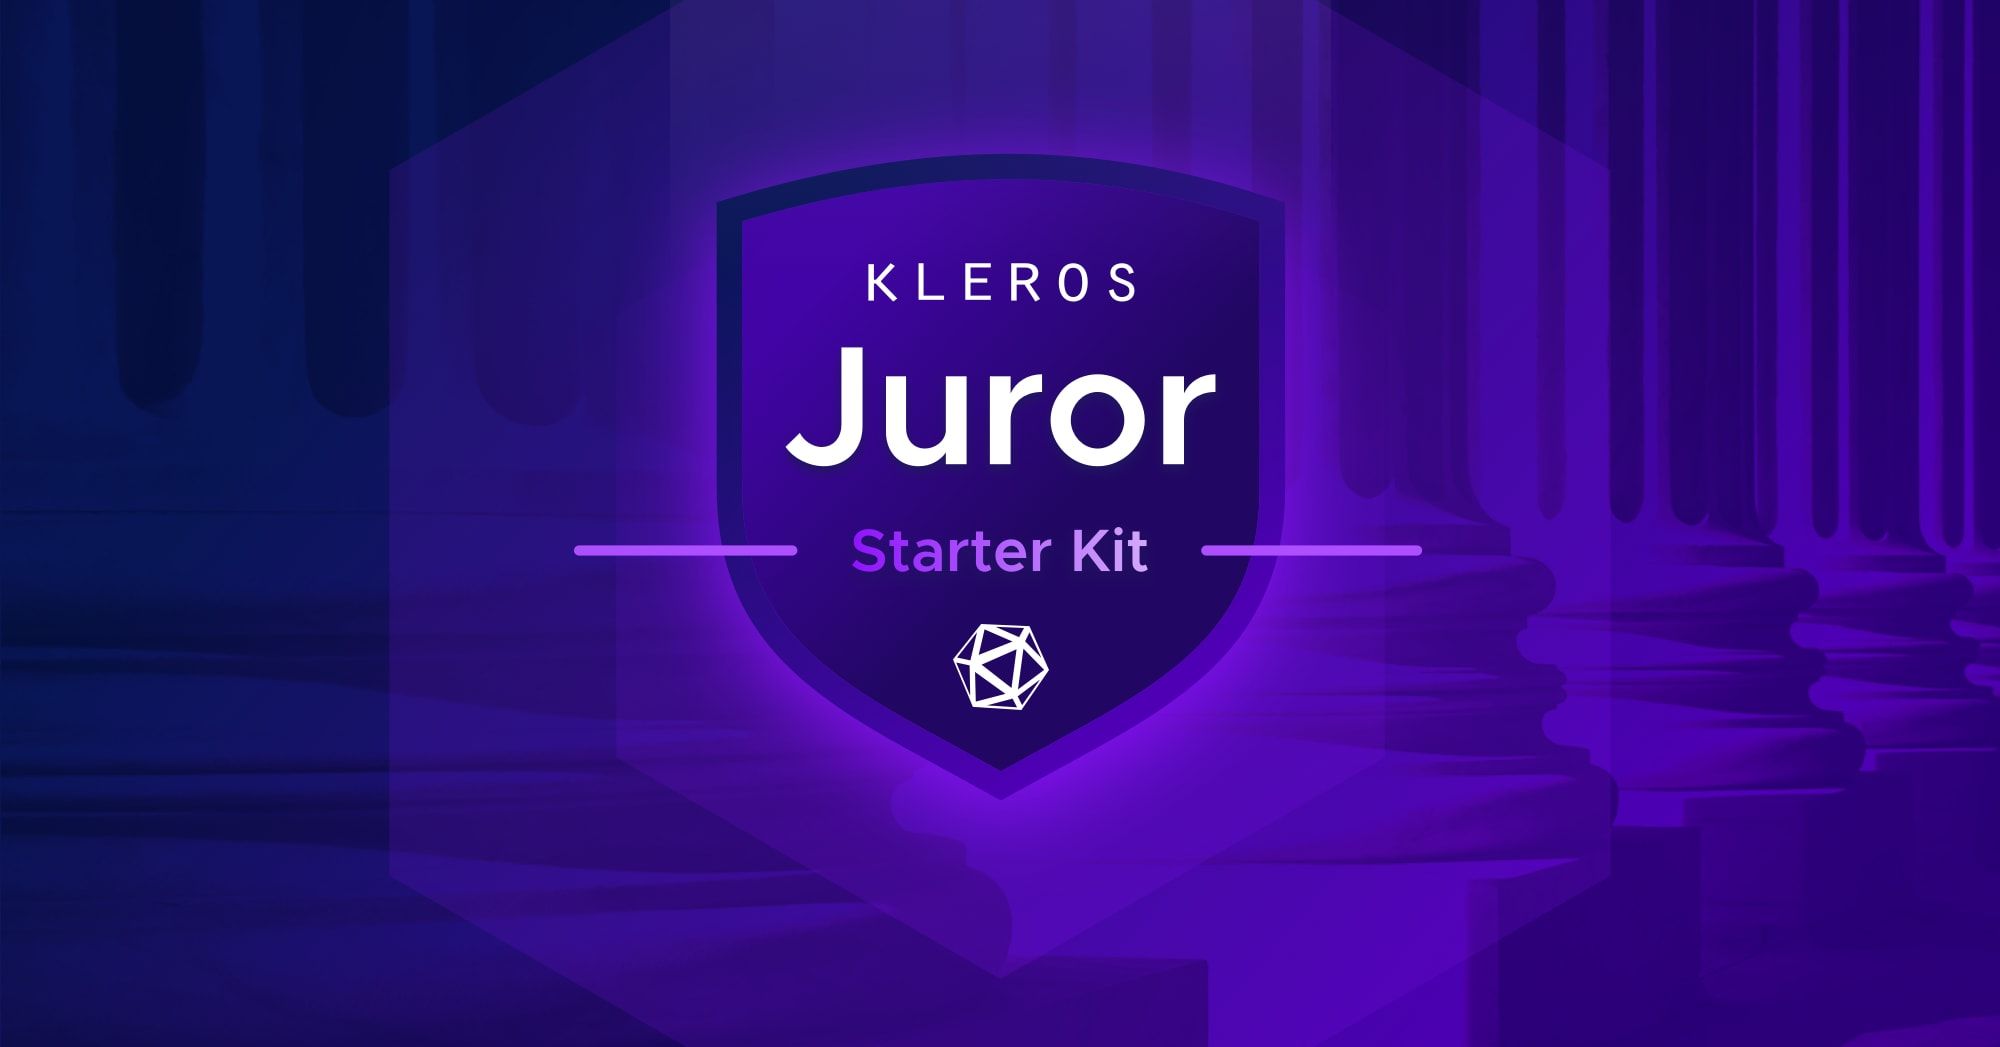 The Kleros Juror Starter Kit